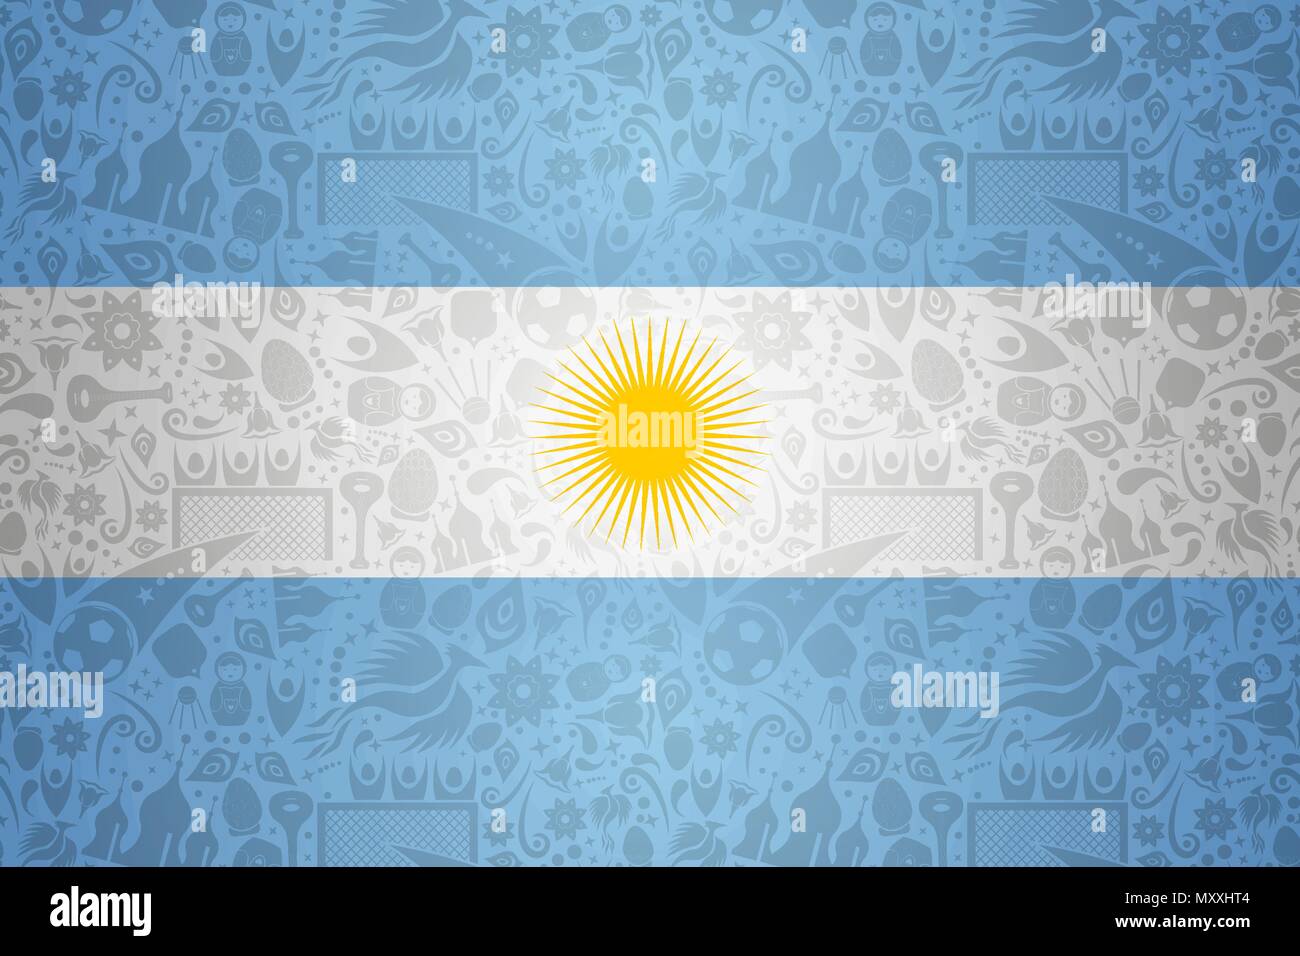 Argentinien Flagge Hintergrund für besondere Fußball-Sport Ereignis. Mit russischen Stil Ikonen. EPS 10 Vektor. Stock Vektor